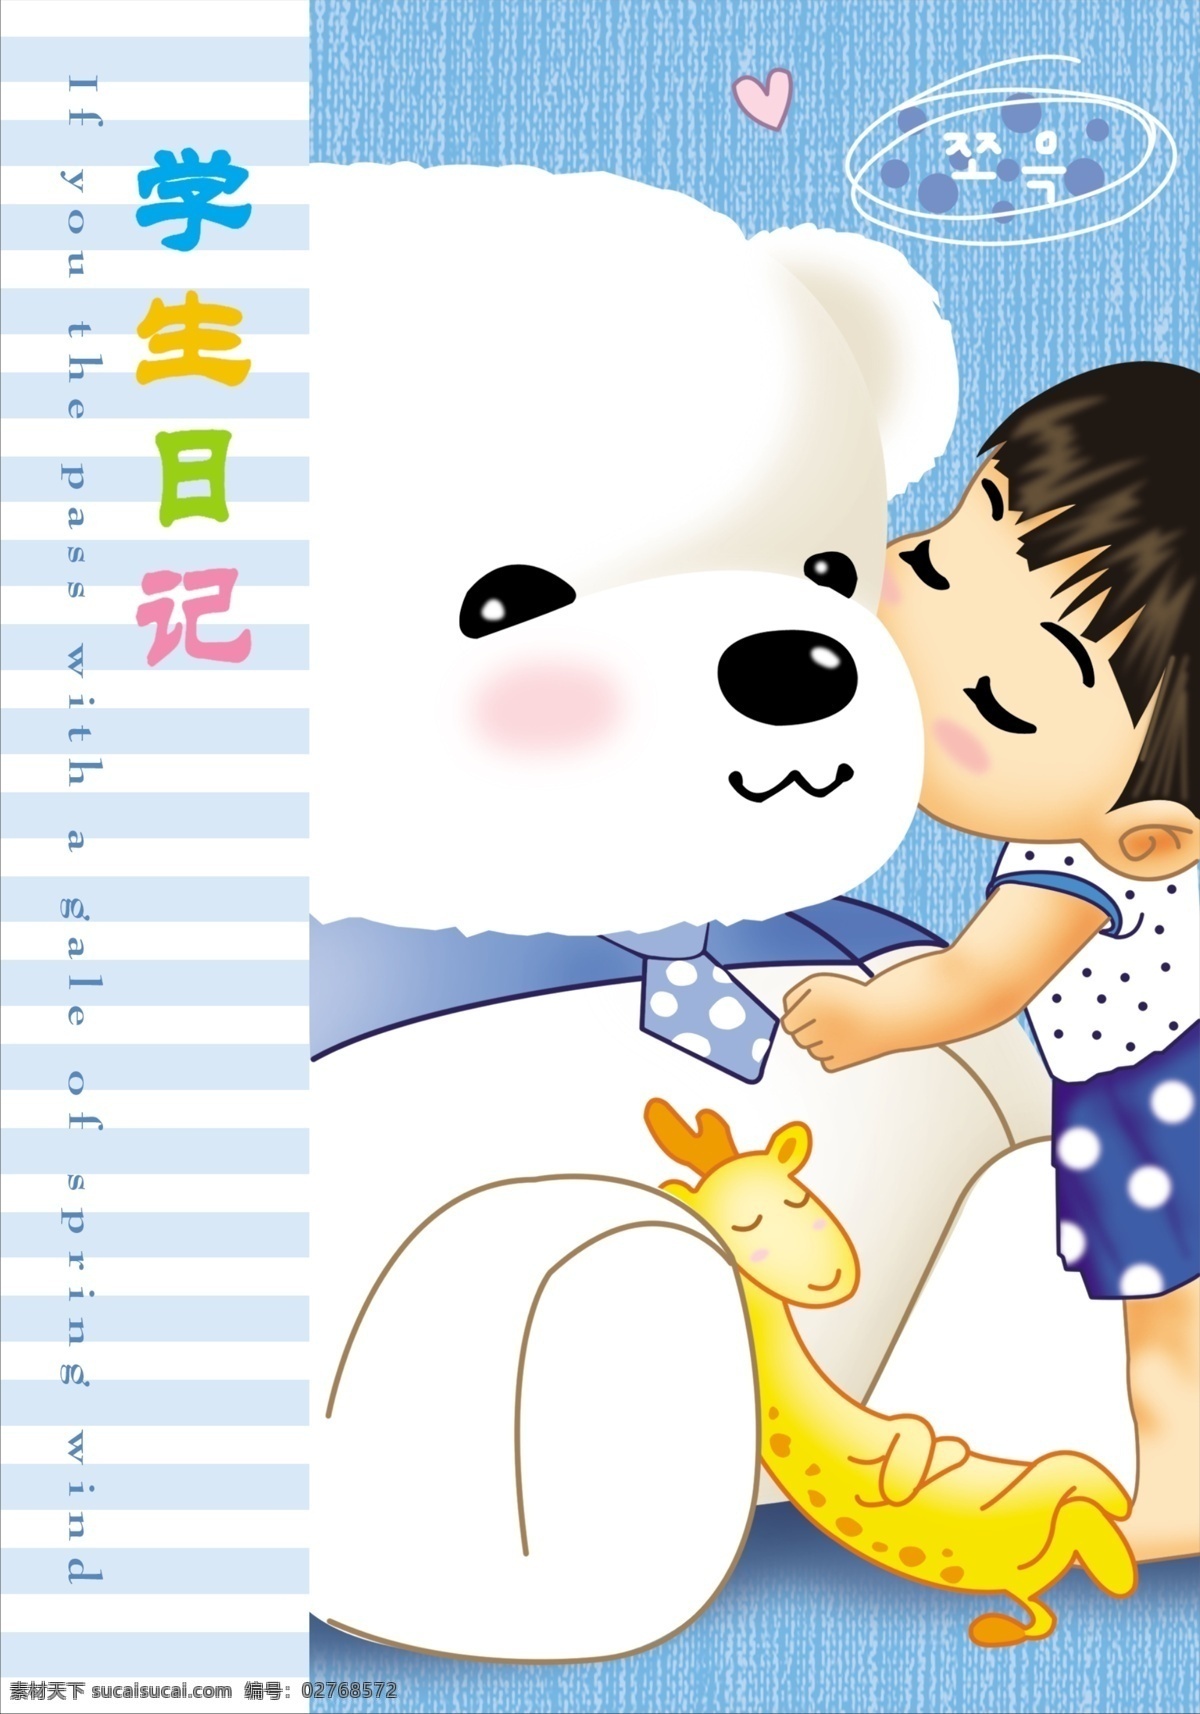 韩国 卡通 本本 封面 韩国卡通 学生日记 卡通熊 熊 可爱小女孩 小孩 长颈鹿 卡通动物 卡通封面 分层 源文件